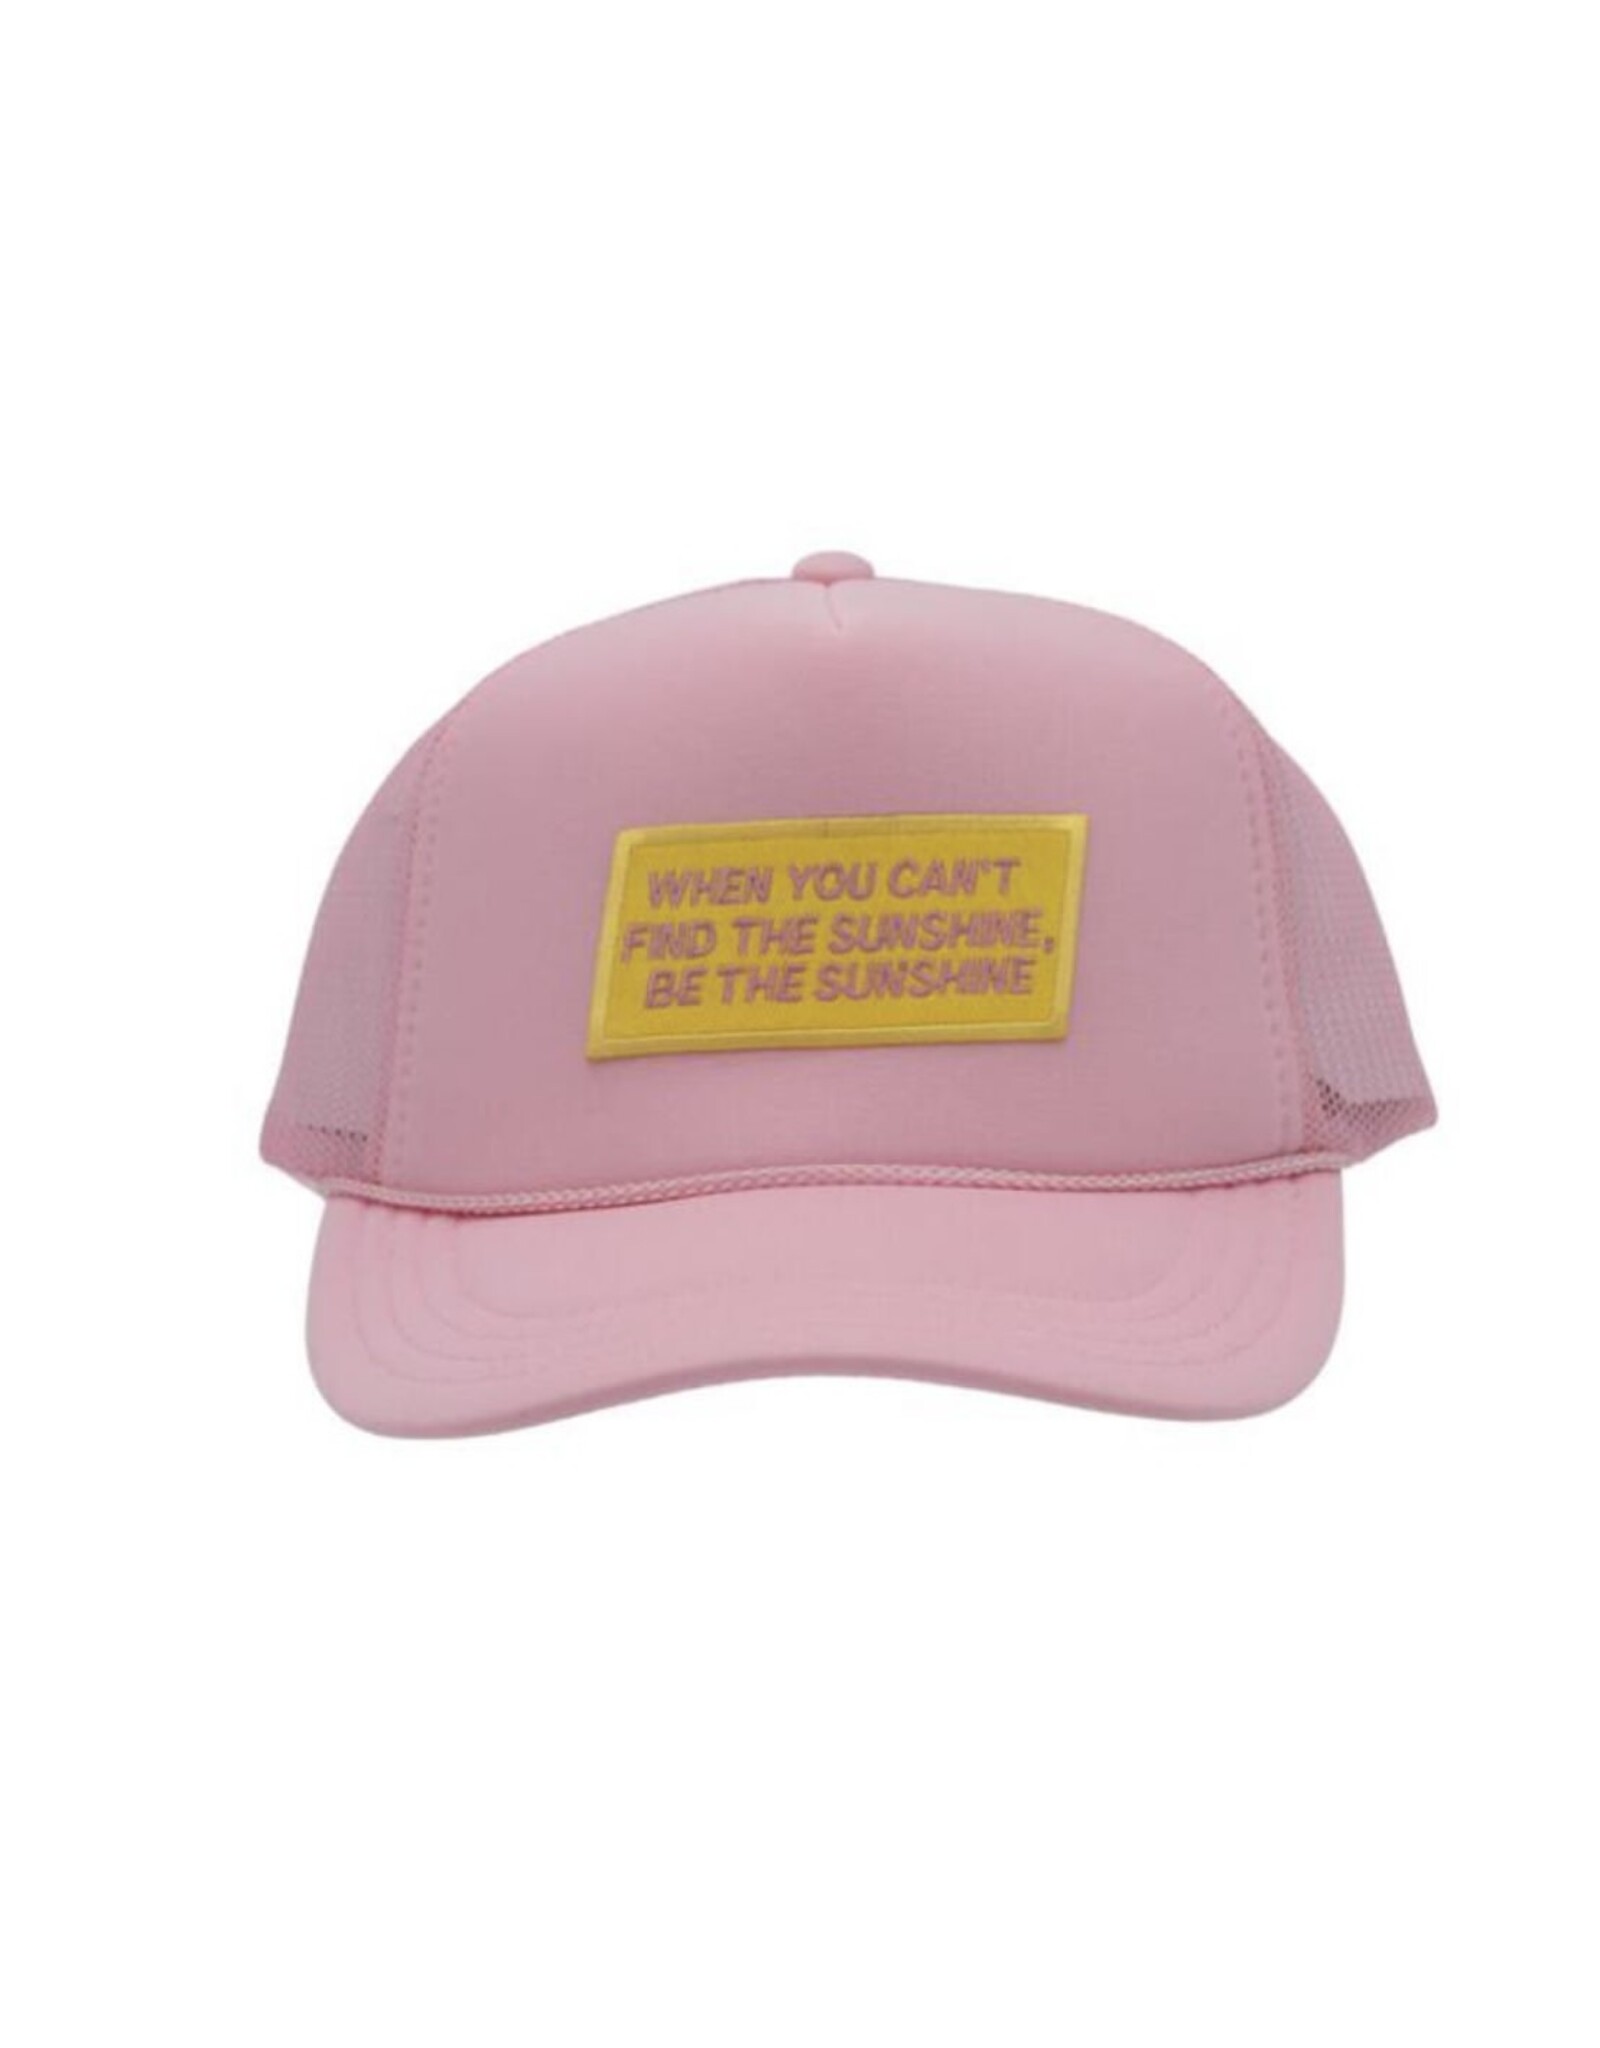 Madley Madley- Sunshine Light Pink Hat